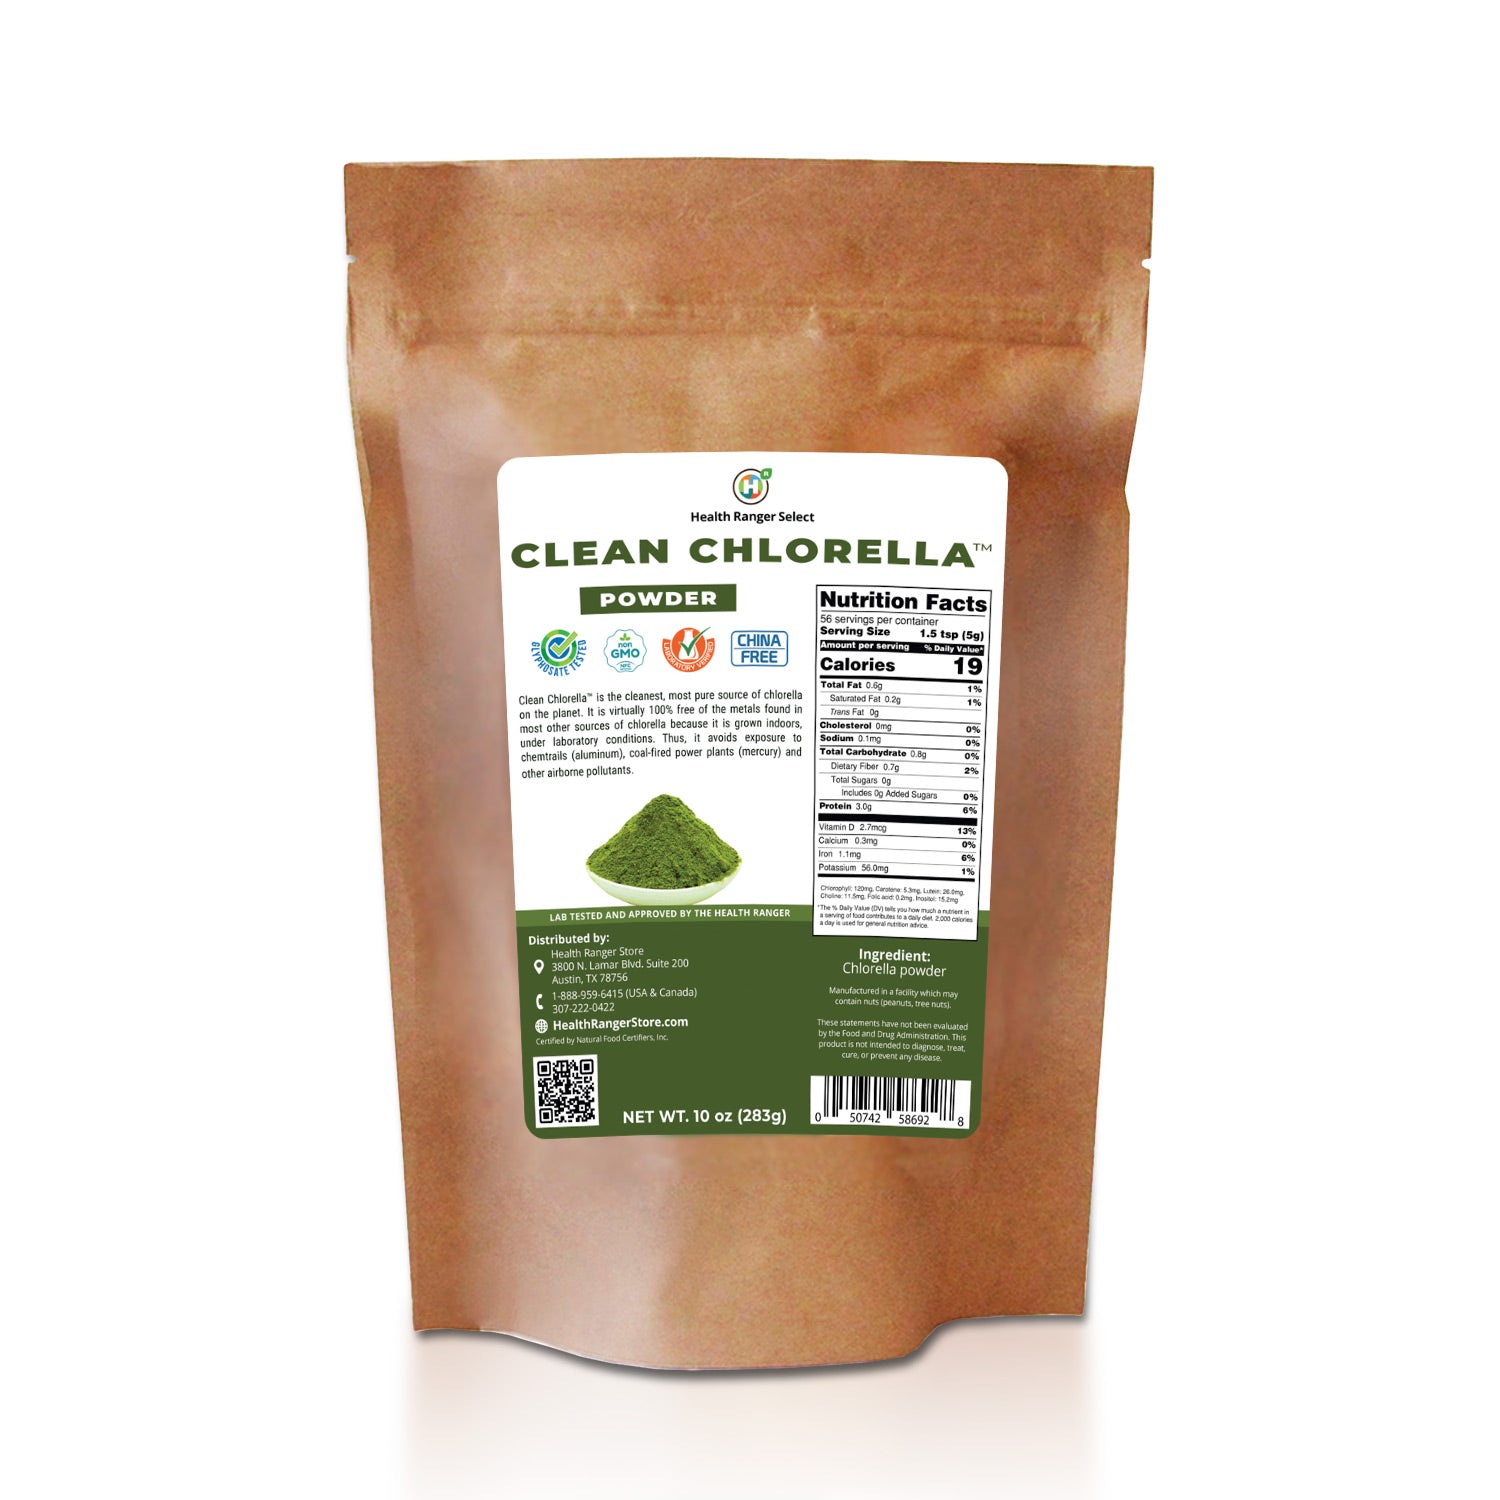 Clean Chlorella Powder 10 oz (283g) (6-Pack)